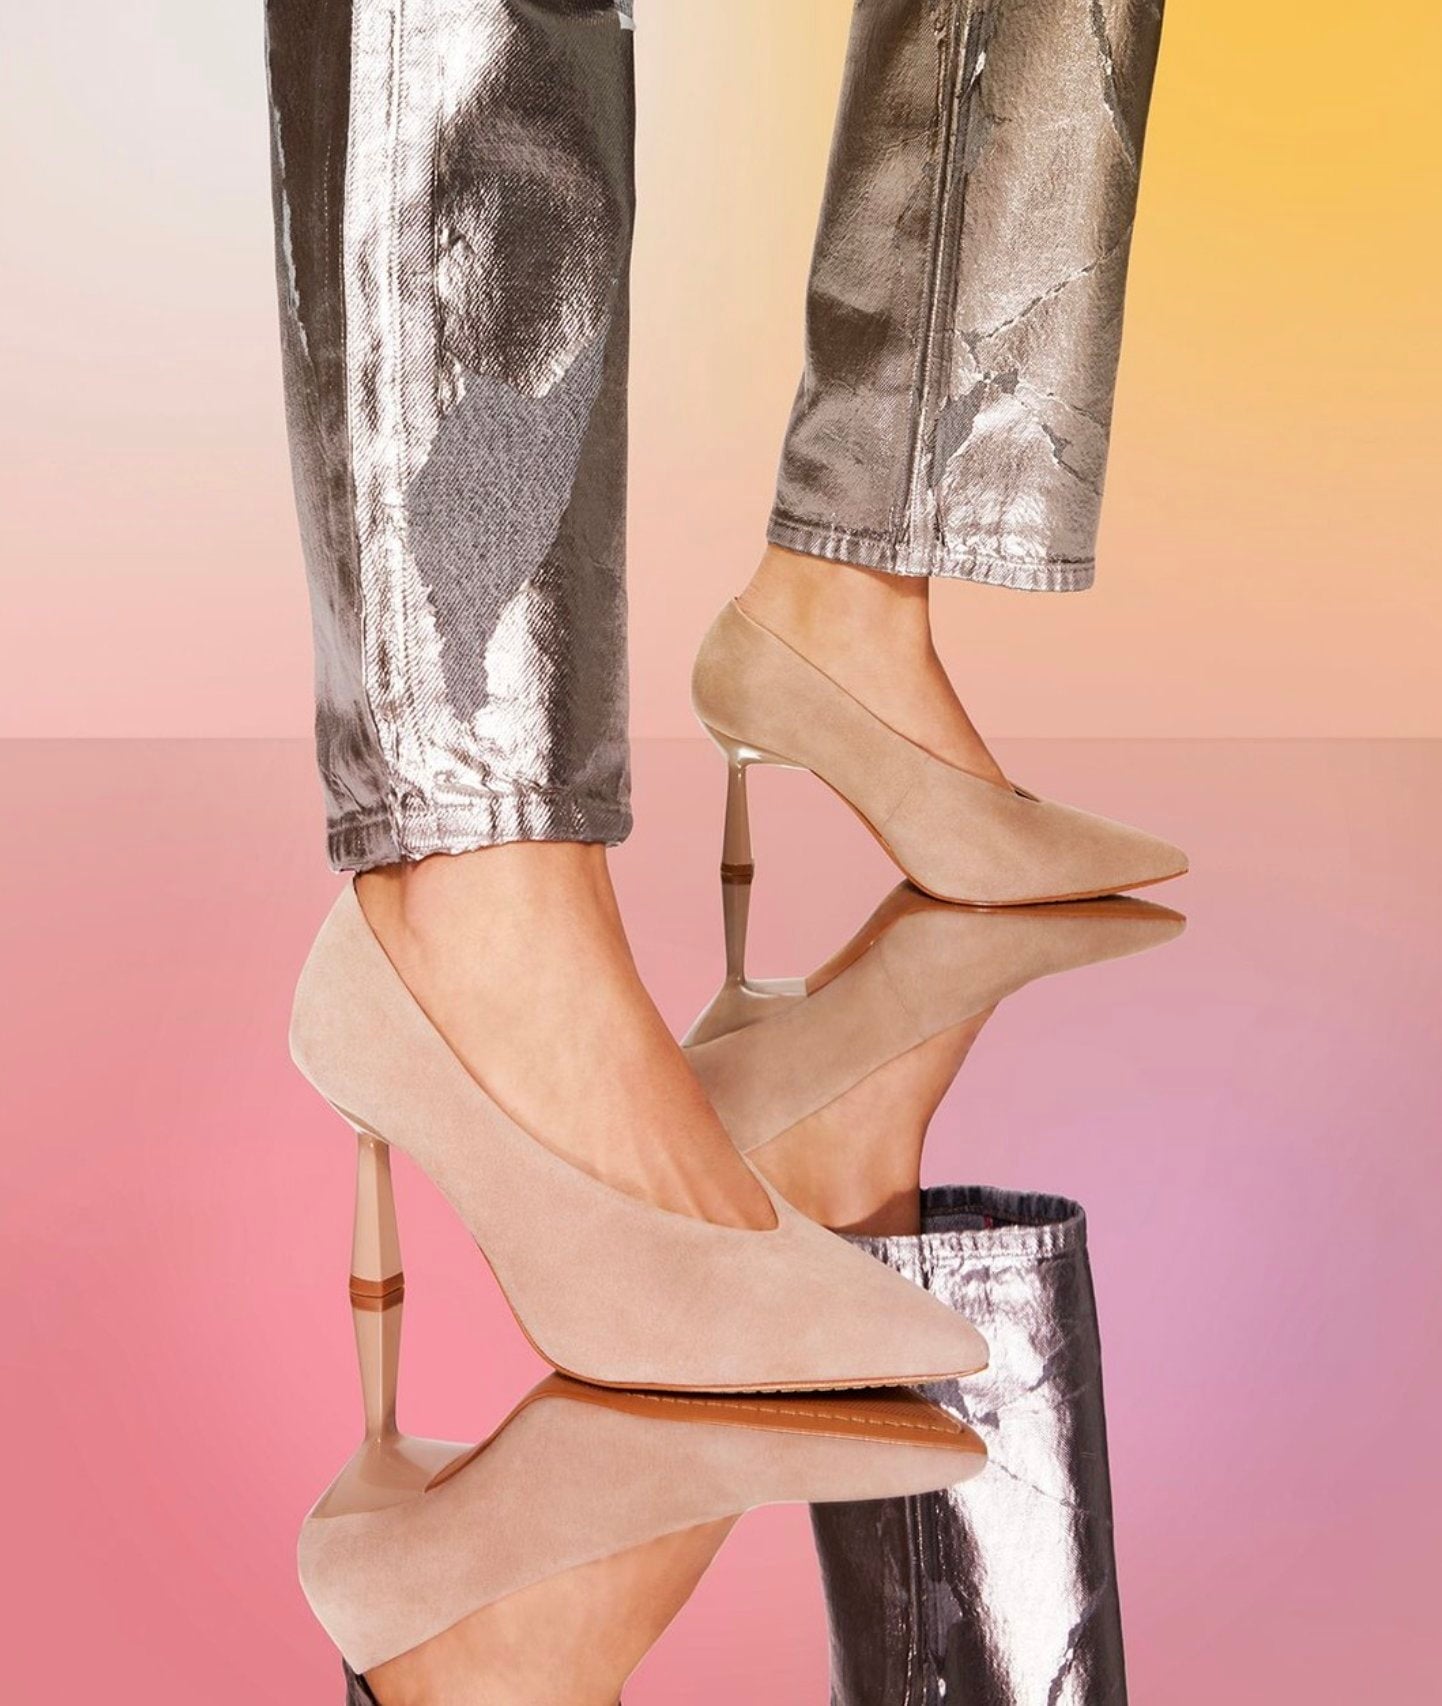 Heels For Women - Buy Heels For Women Online Starting at Just